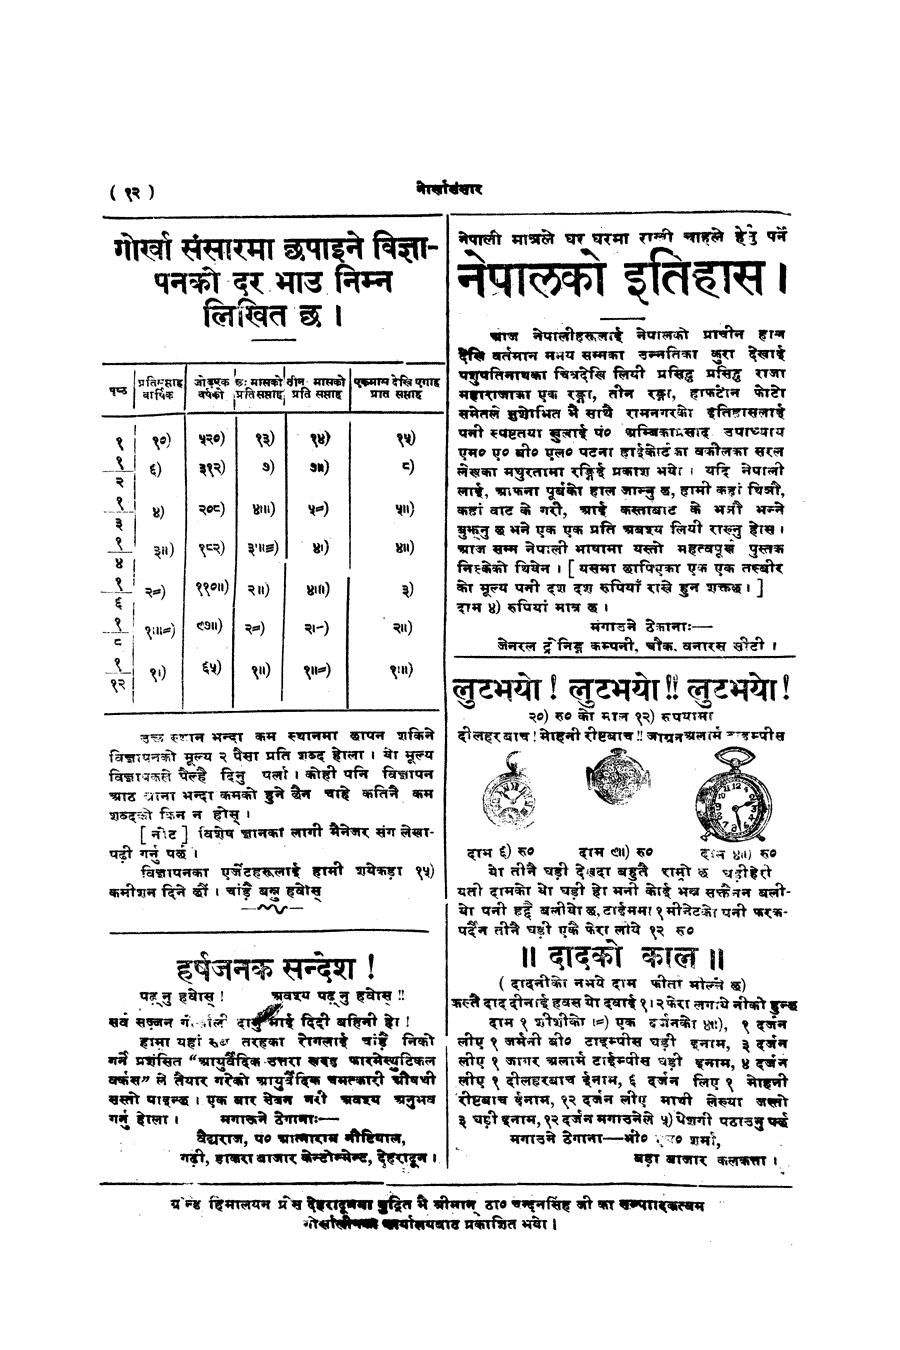 Gorkha Sansar, 10 Jan 1928, page 12